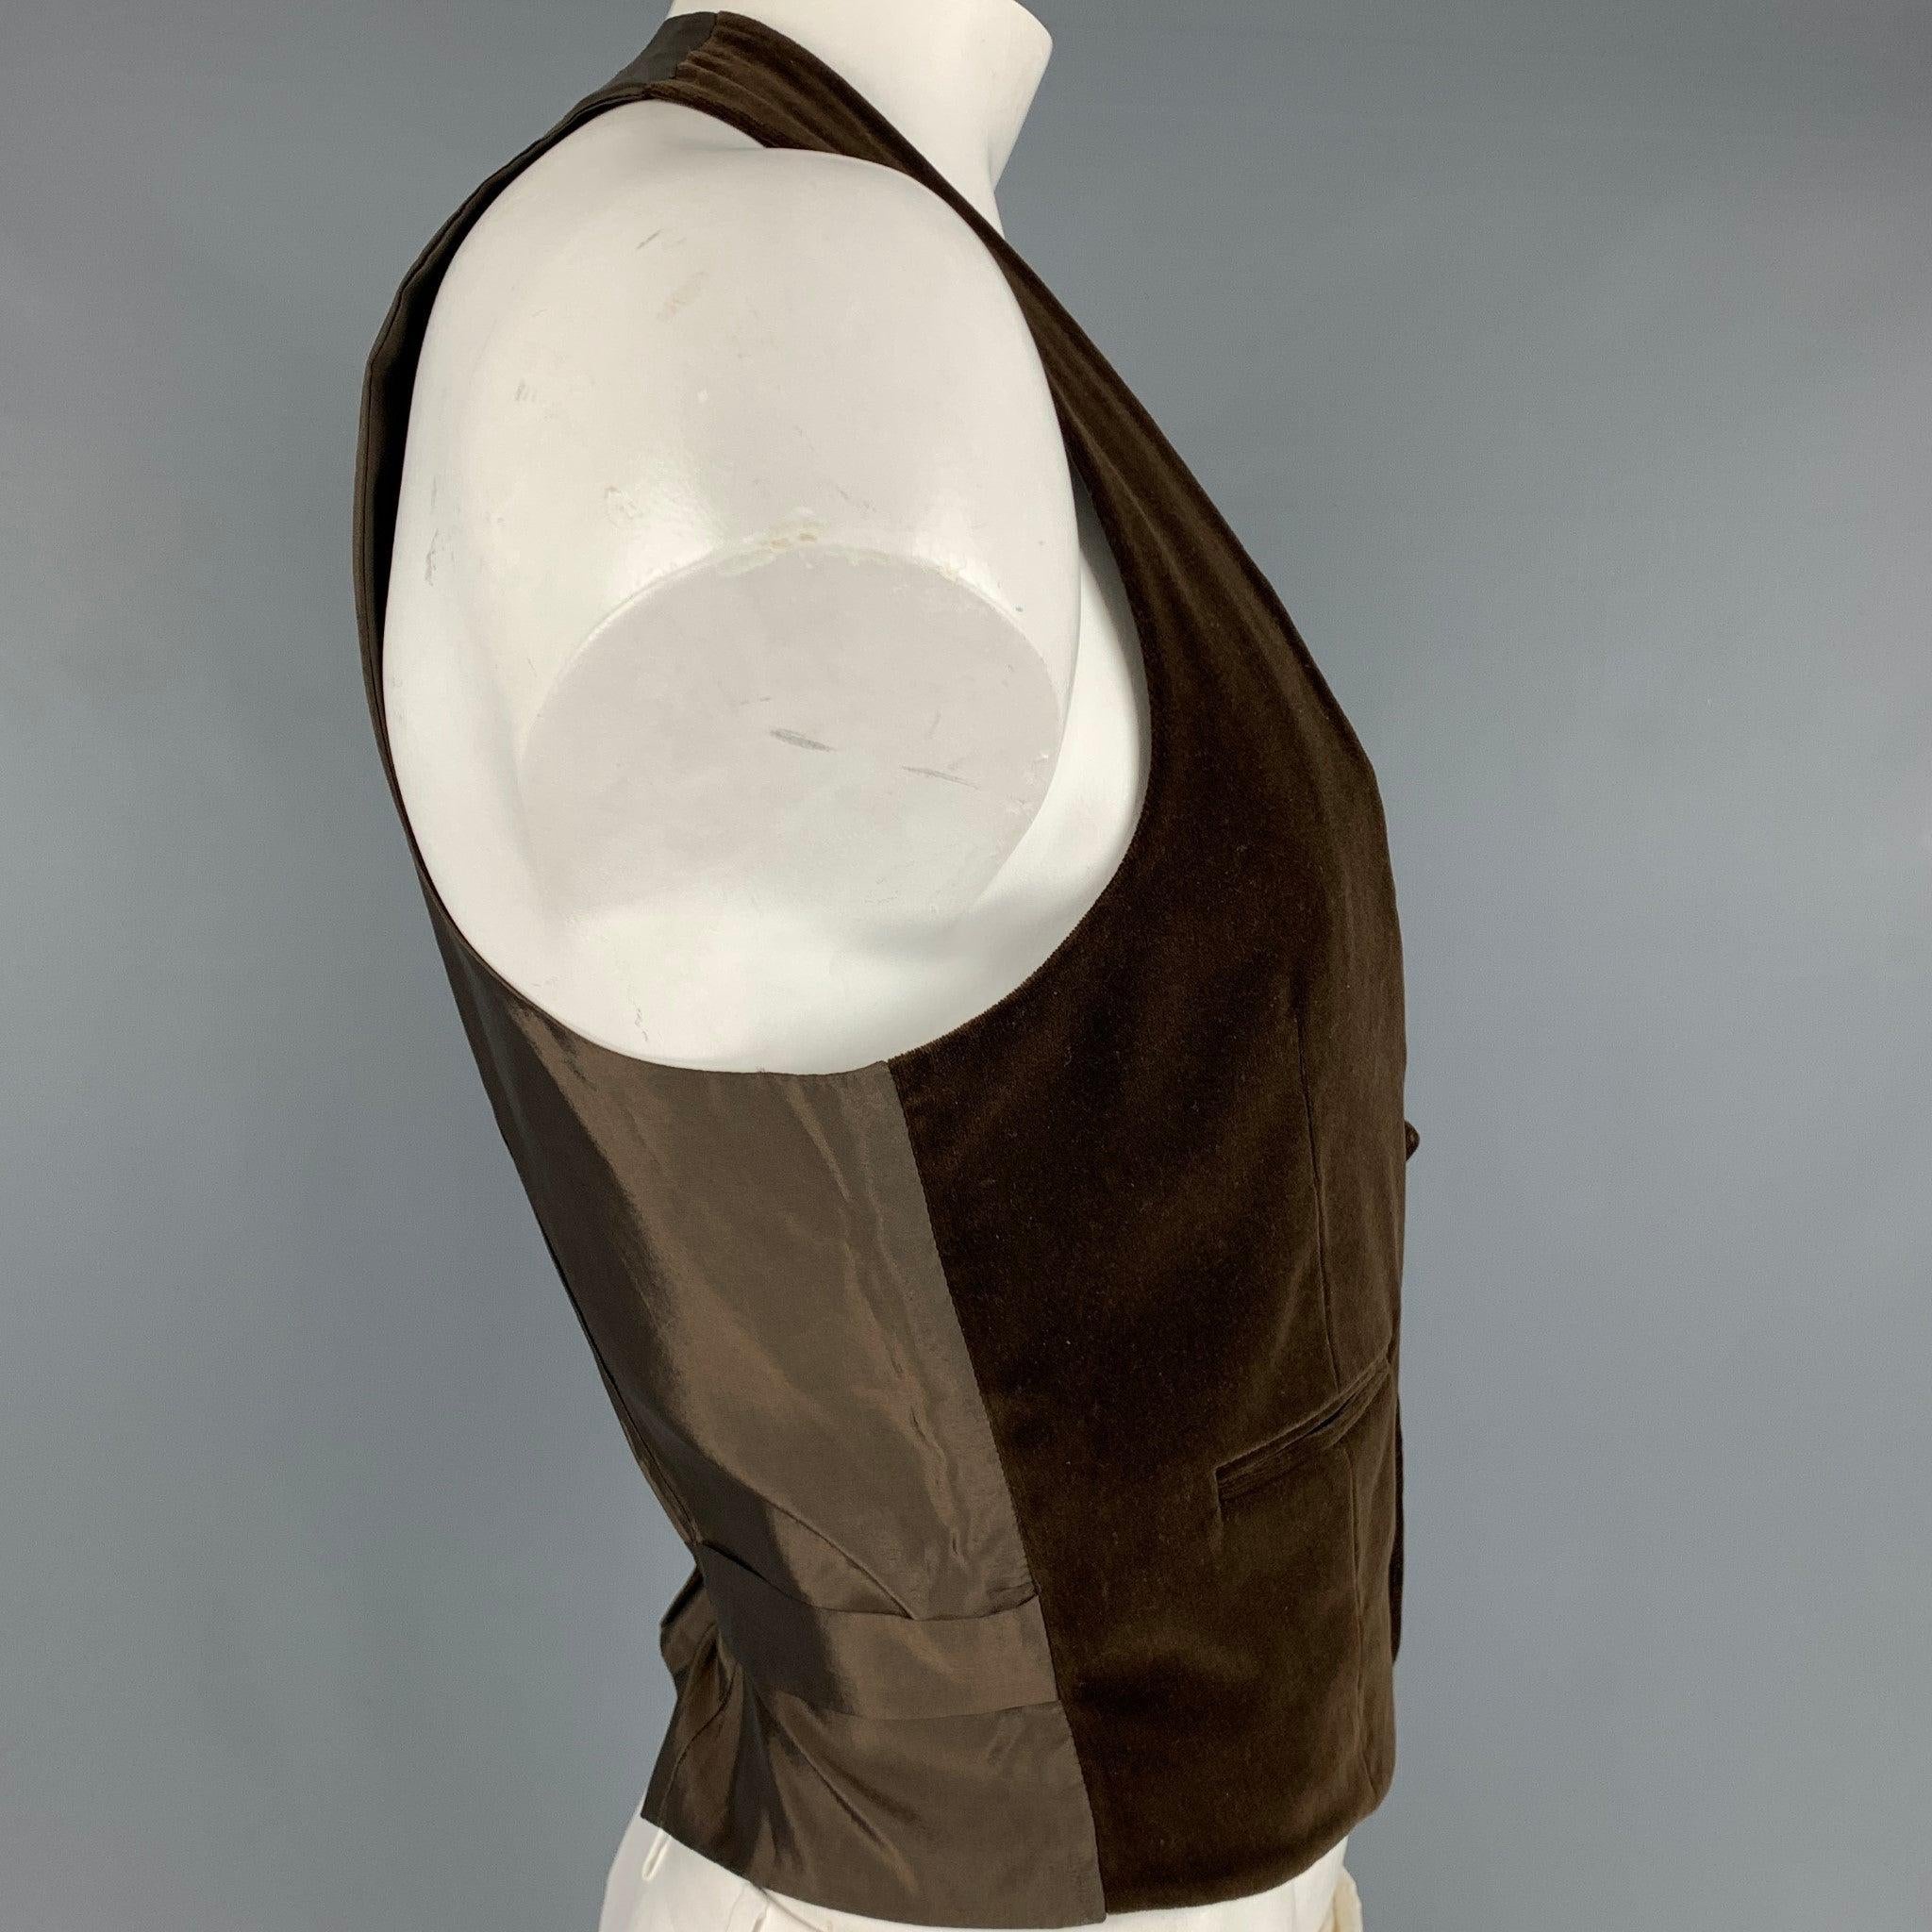 Gilet GIORGIO ARMANI
en coton marron avec une texture en velours, deux poches et une fermeture à boutons. Fabriqué en Italie. Excellent état. 

Marqué :   54 

Mesures : 
 
Épaule : 12.5 pouces Poitrine : 44 pouces Longueur : 22 pouces 
  
  
